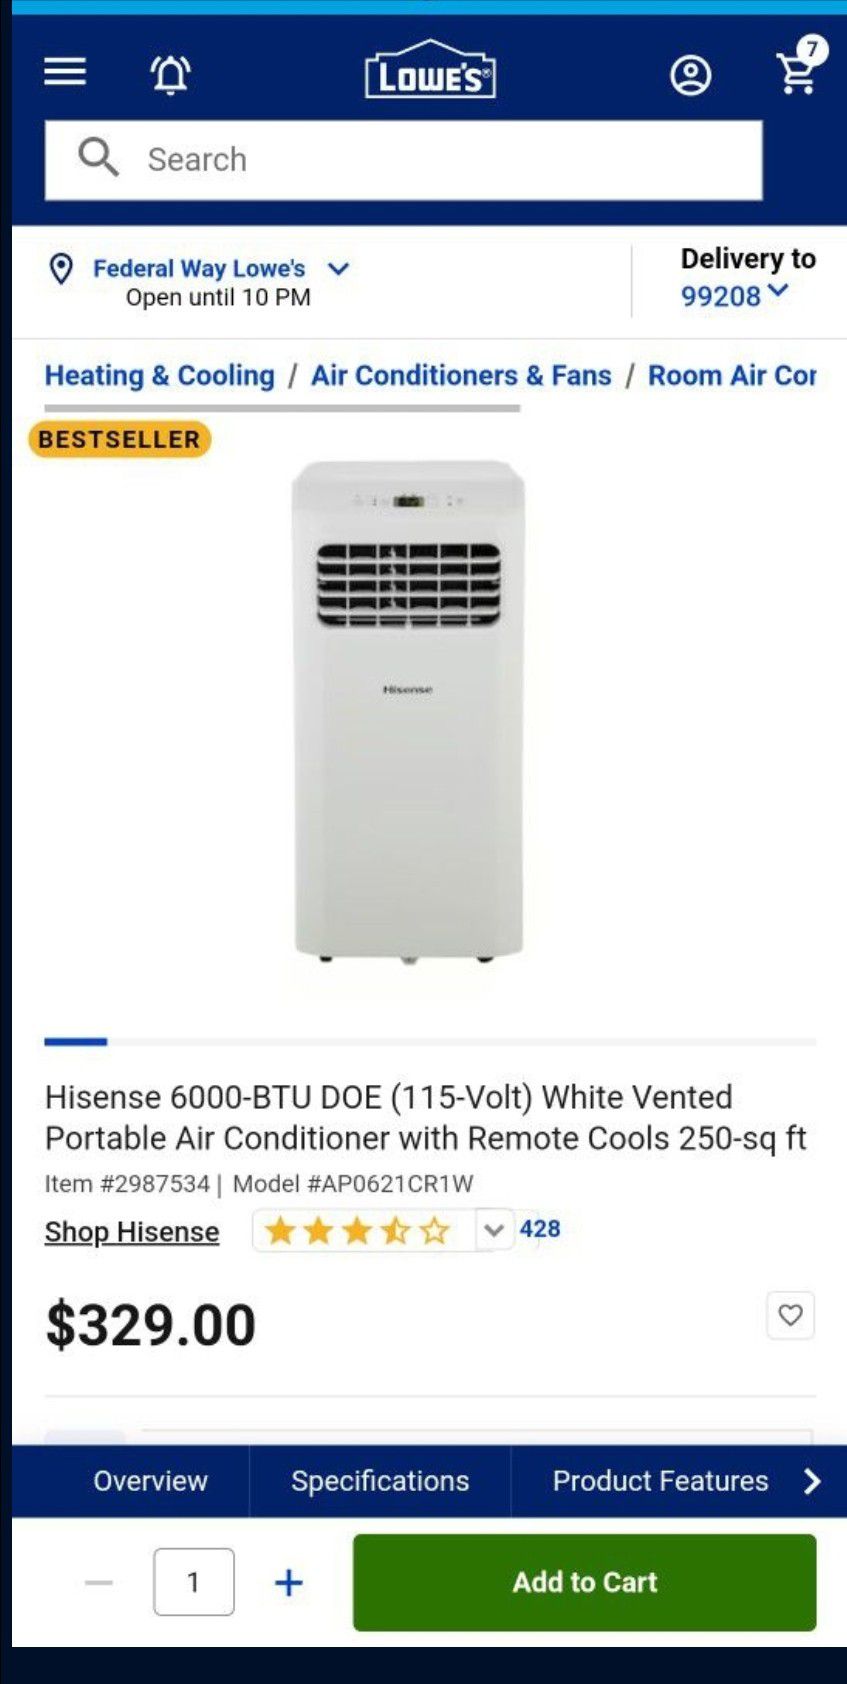 Hisense 6000-BTU DOE Portable AC